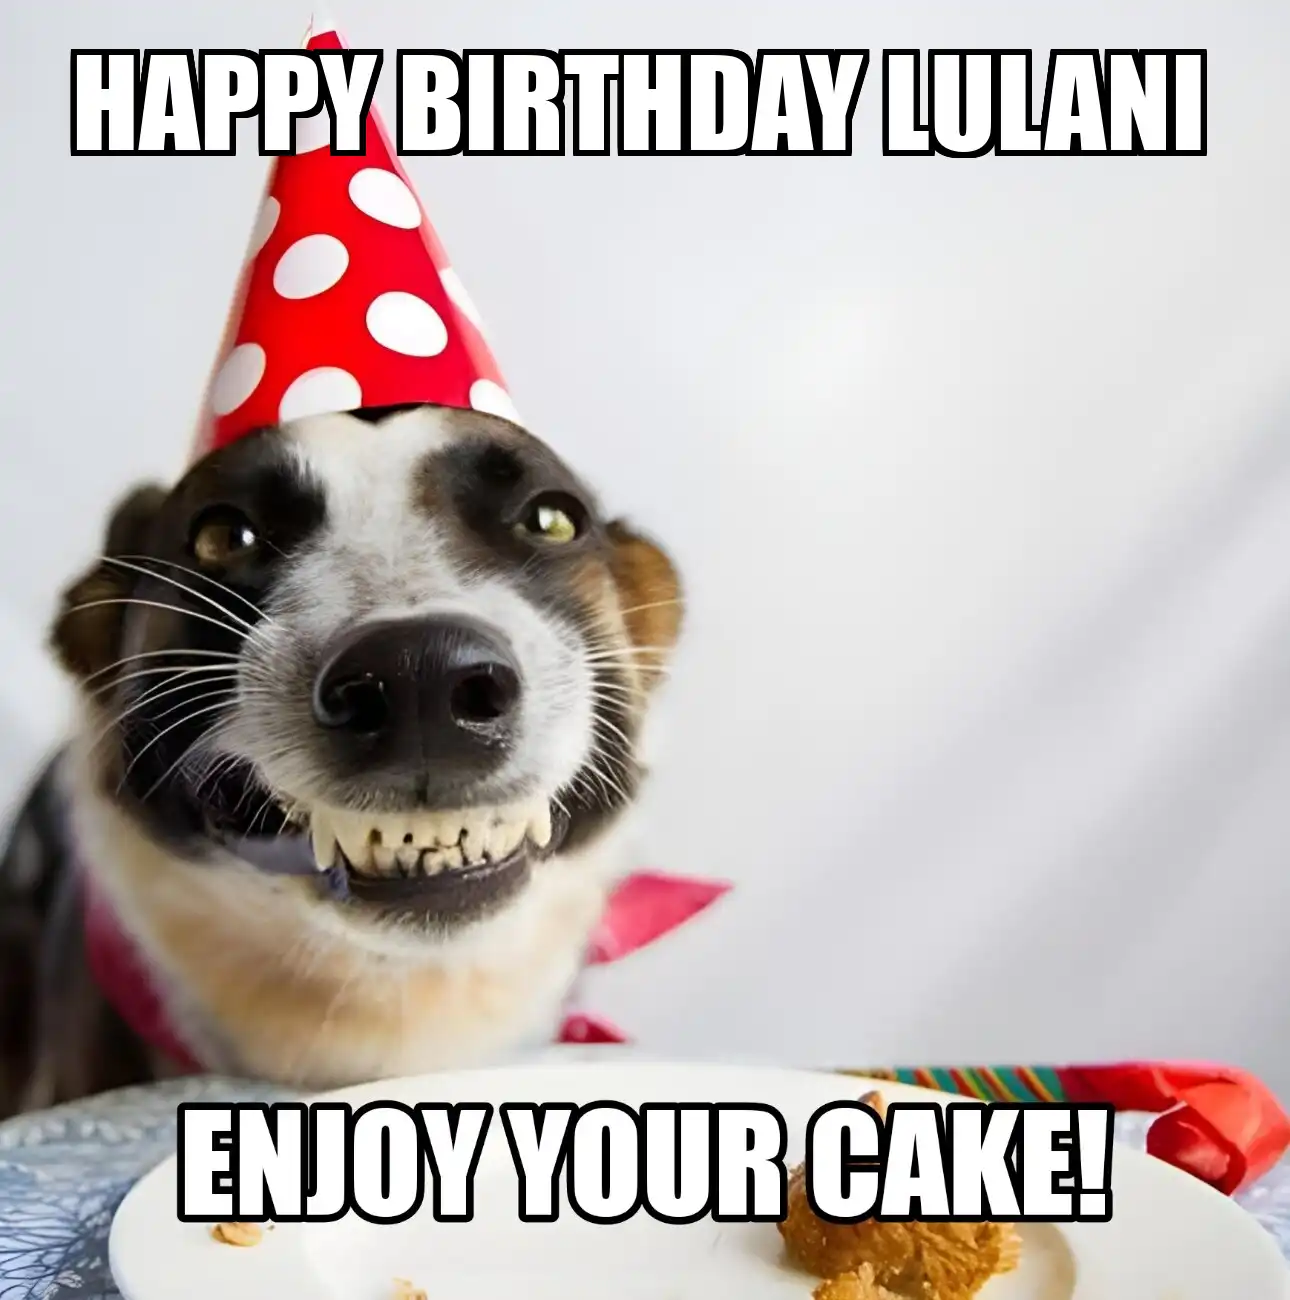 Happy Birthday Lulani Enjoy Your Cake Dog Meme